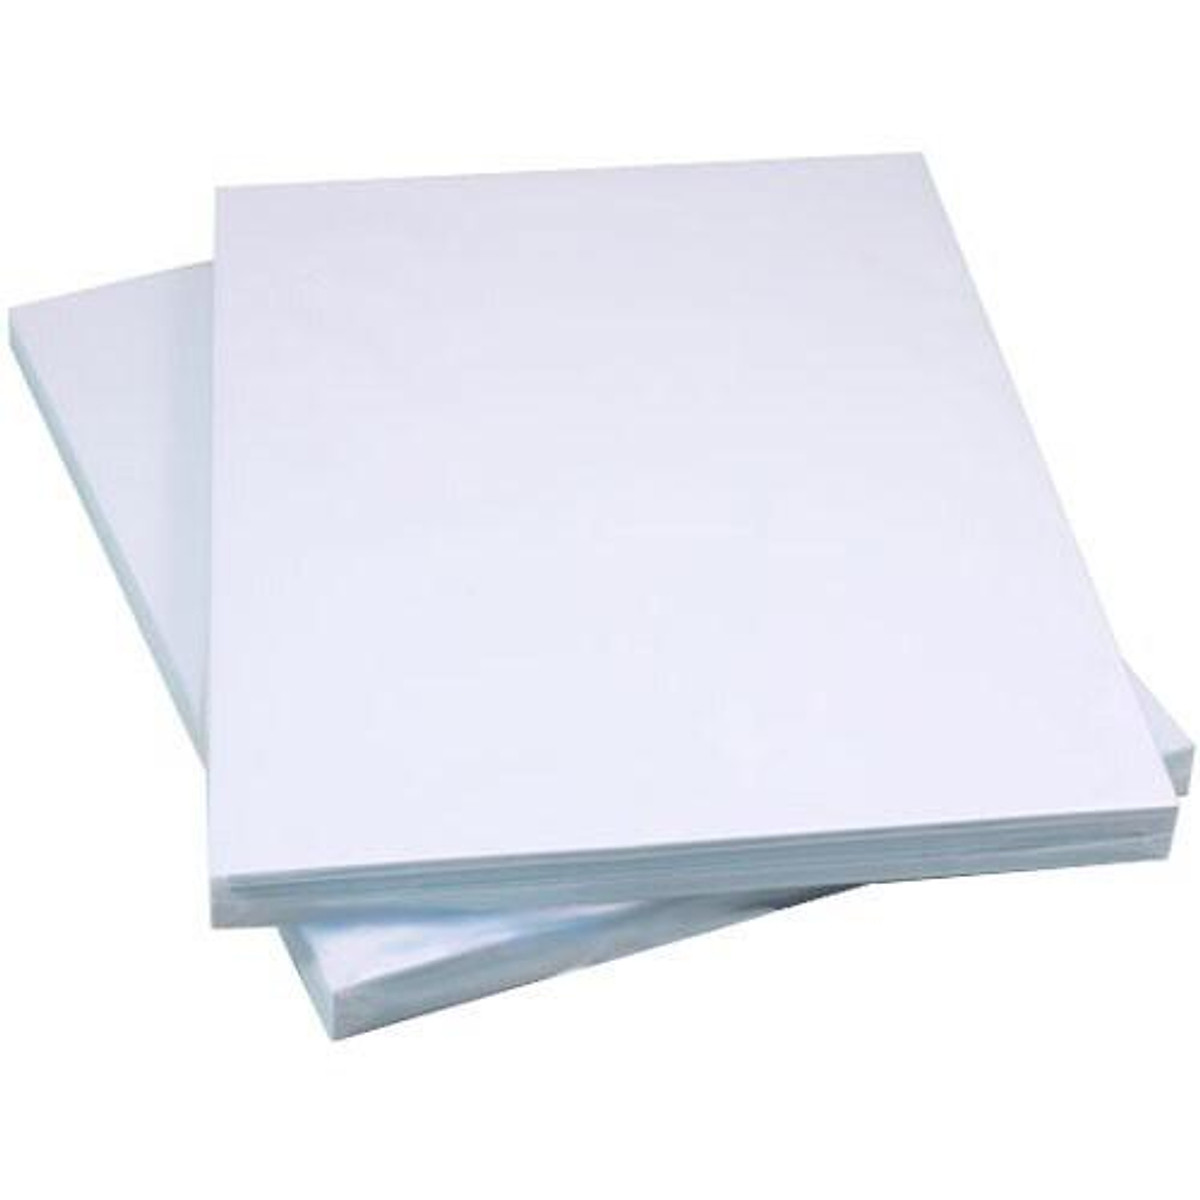 Xấp 100 tờ giấy decal A4 đế xanh mặt trắng - Giấy bìa - Decal